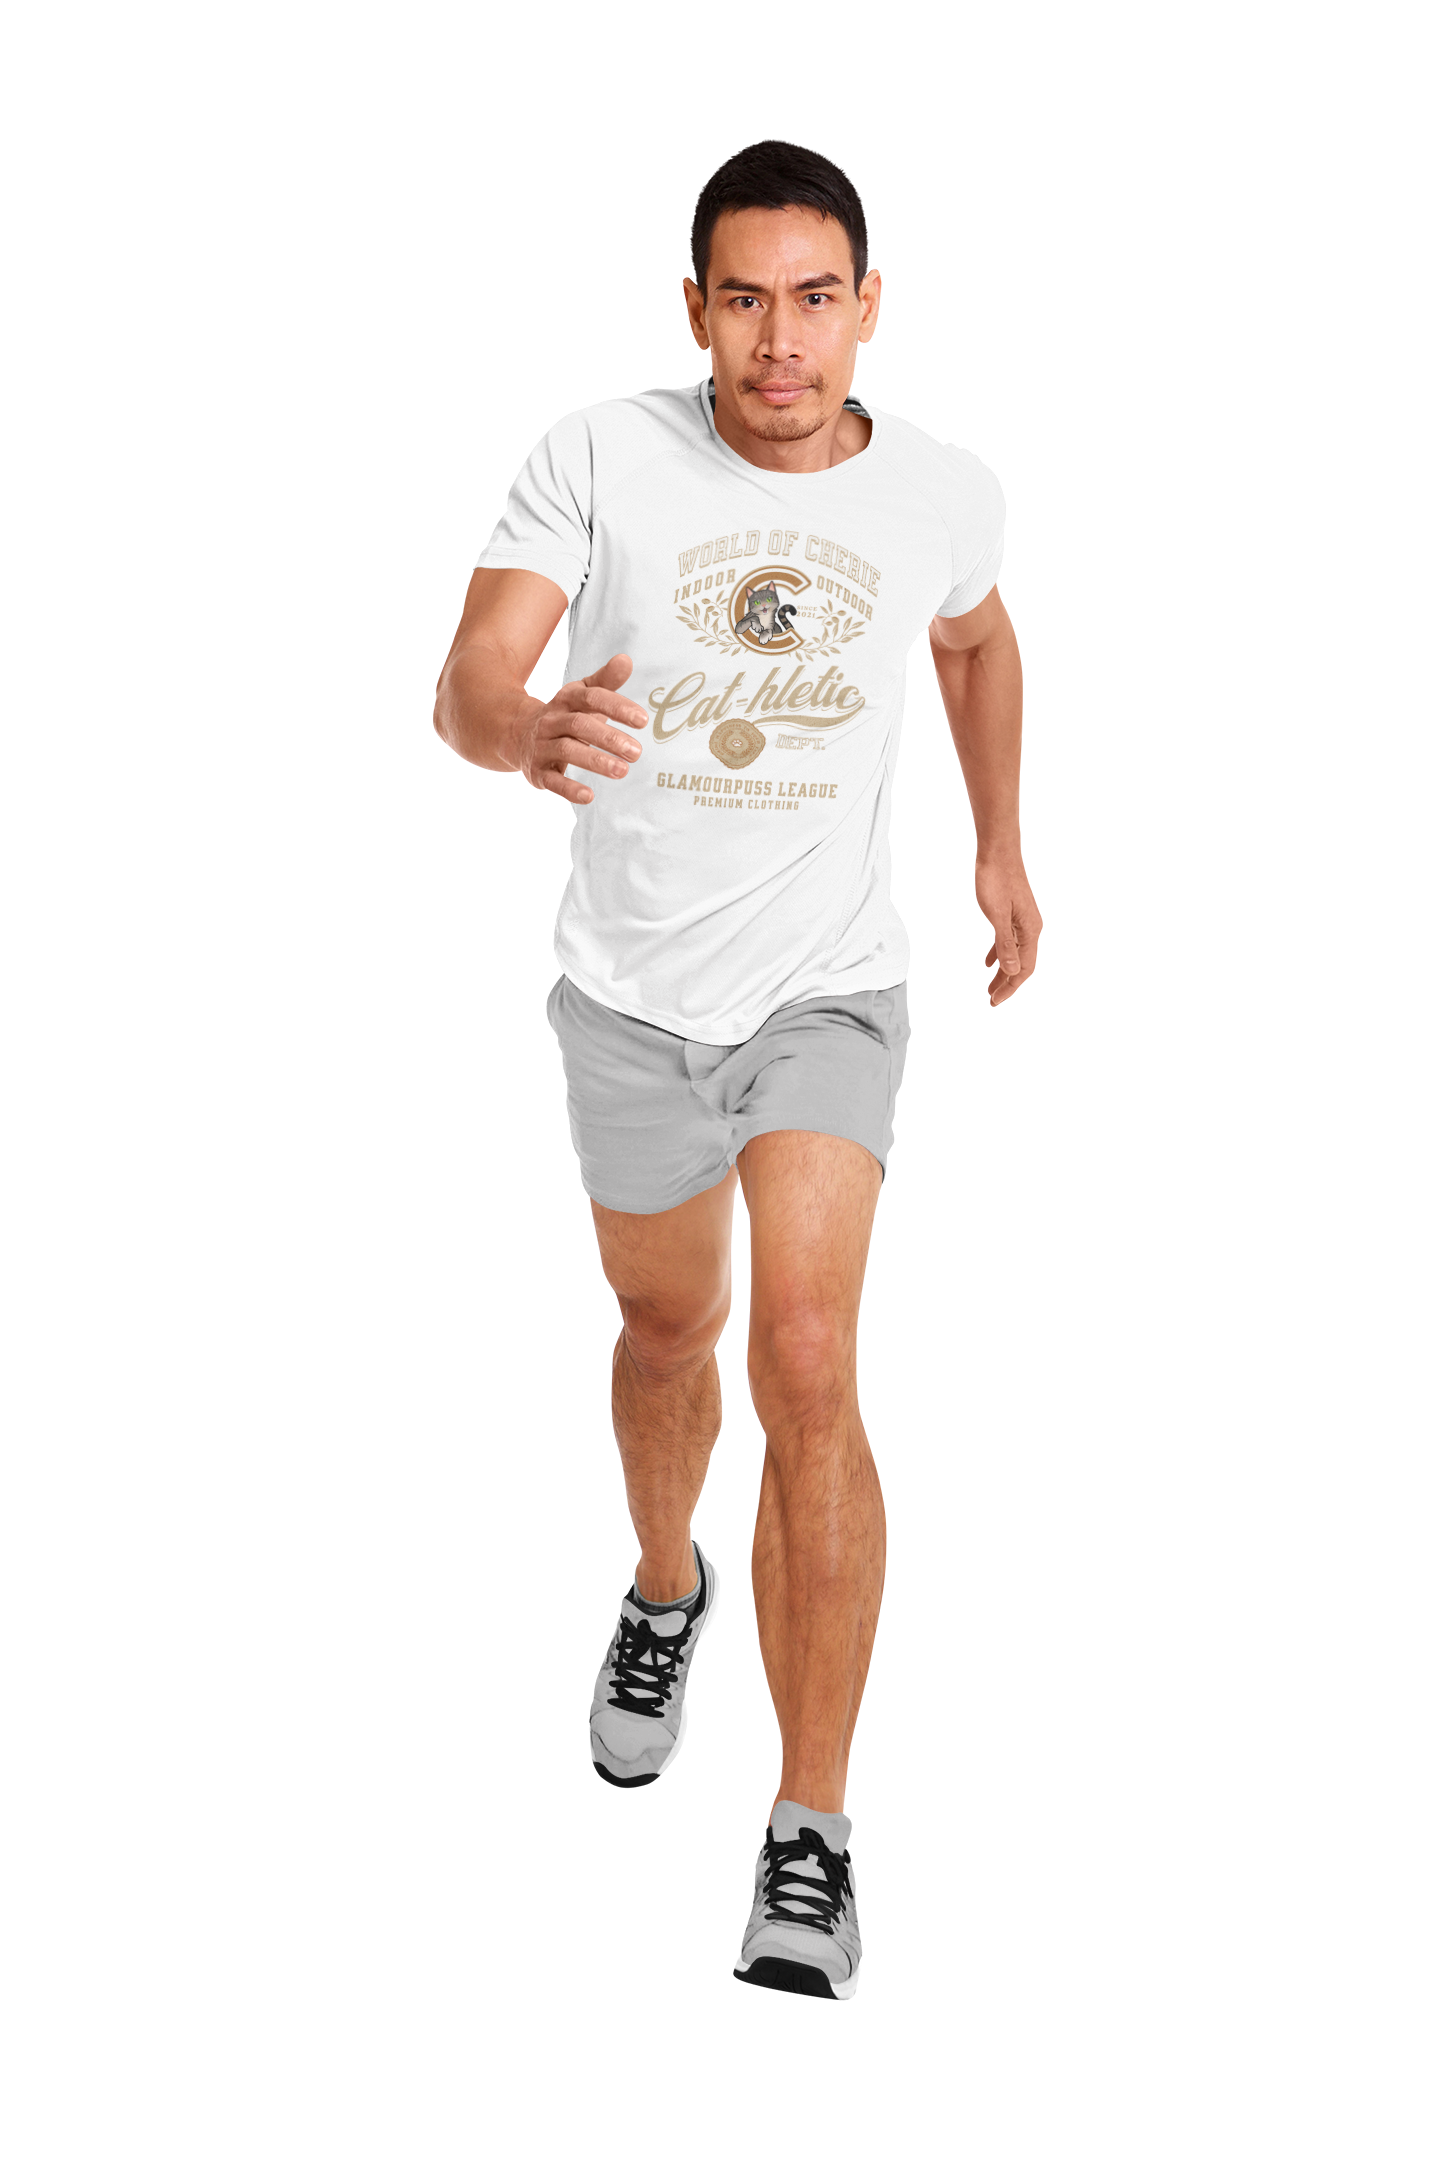 T-Shirt Short-Sleeve Unisex - "Cat-hletic"